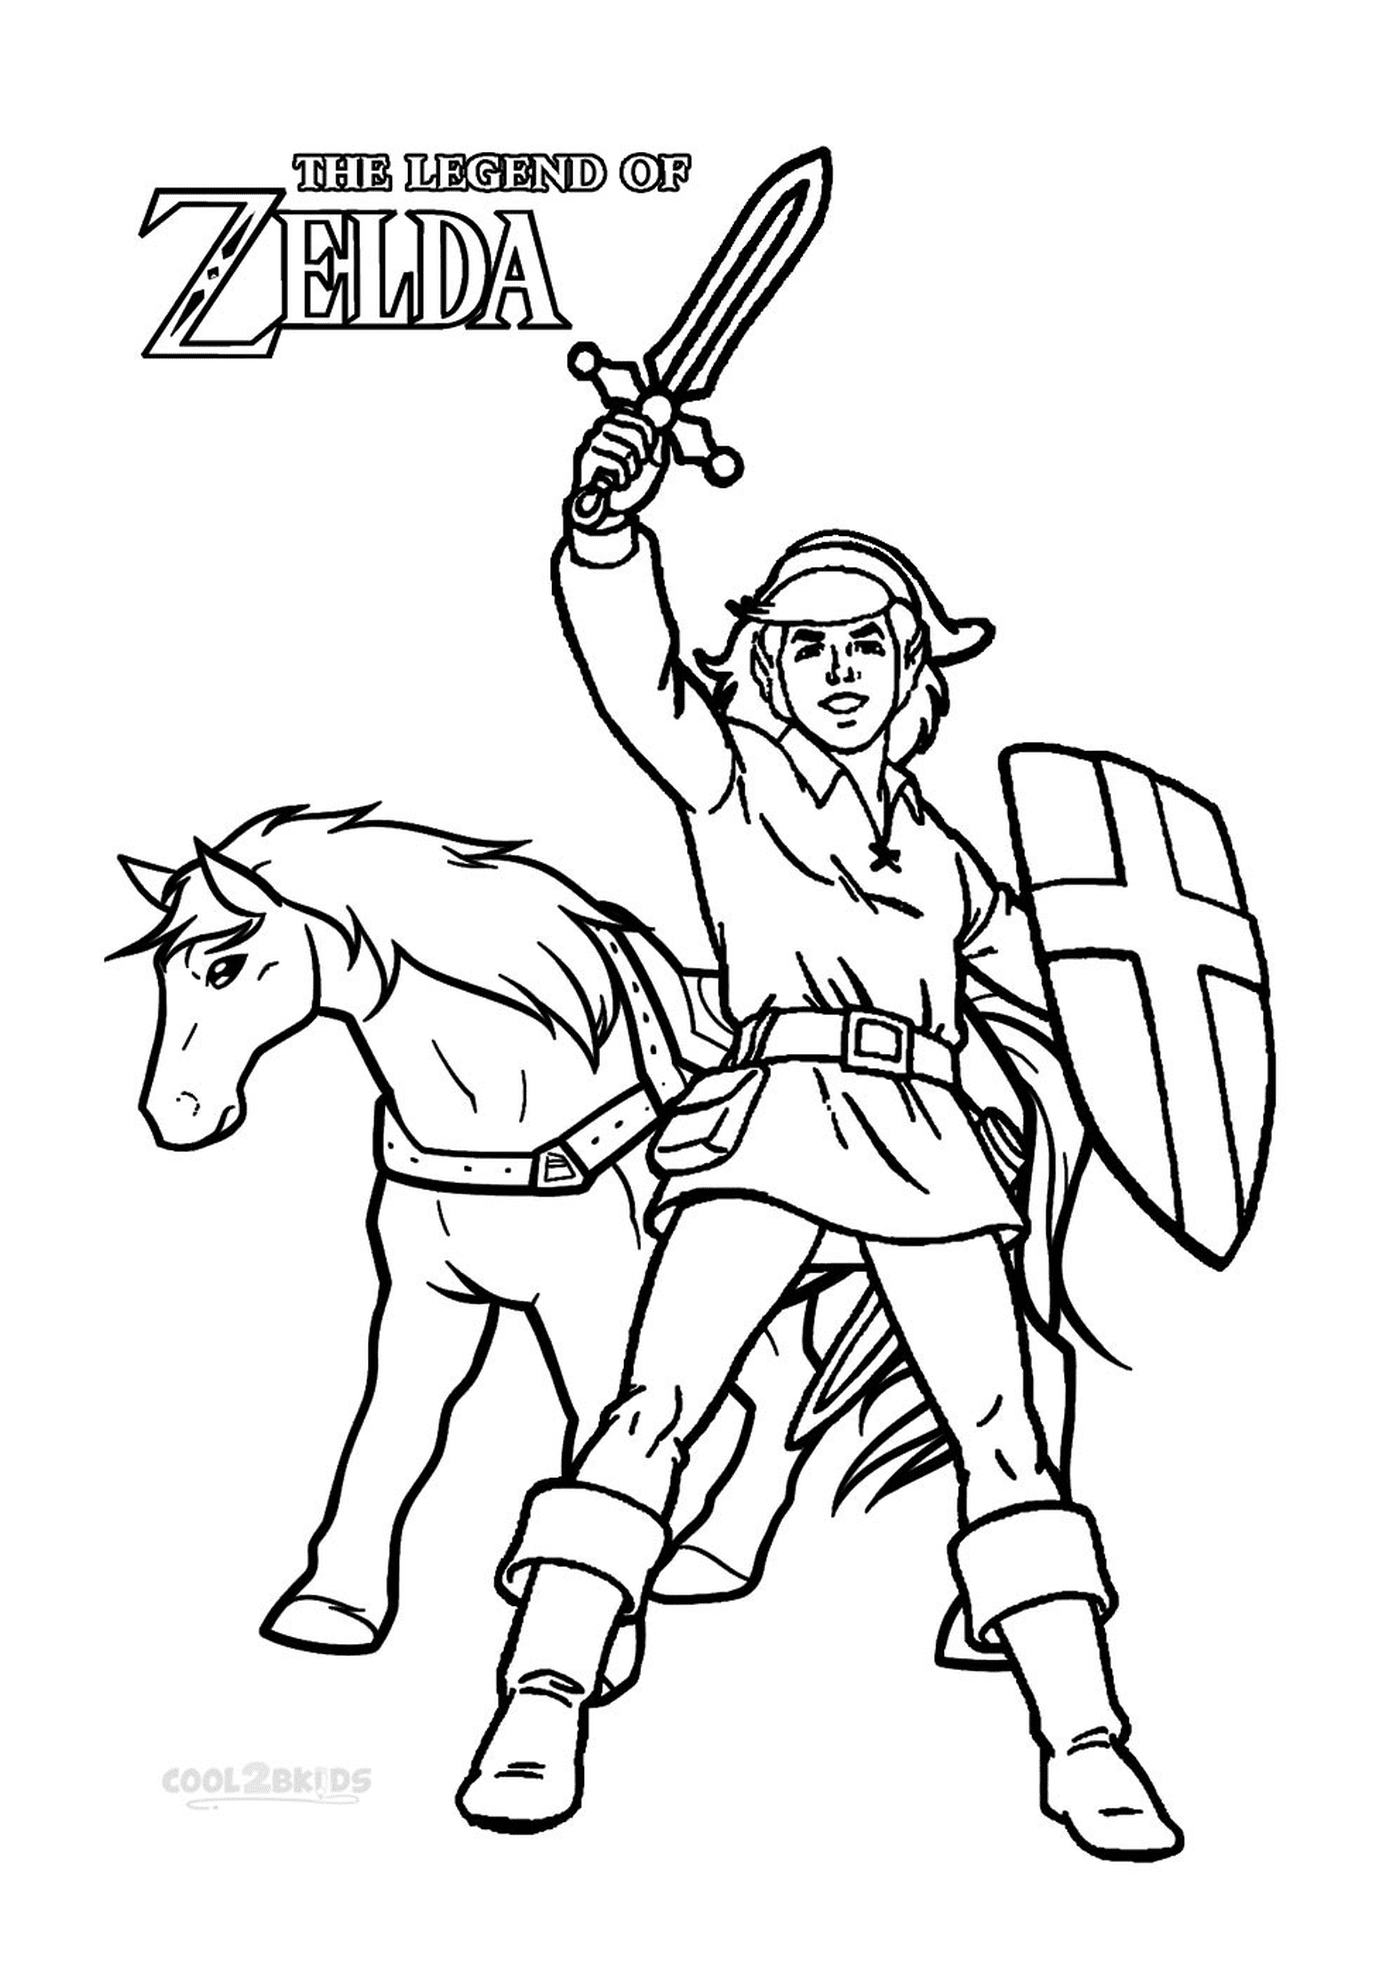  Человек с мечом и лошадью 